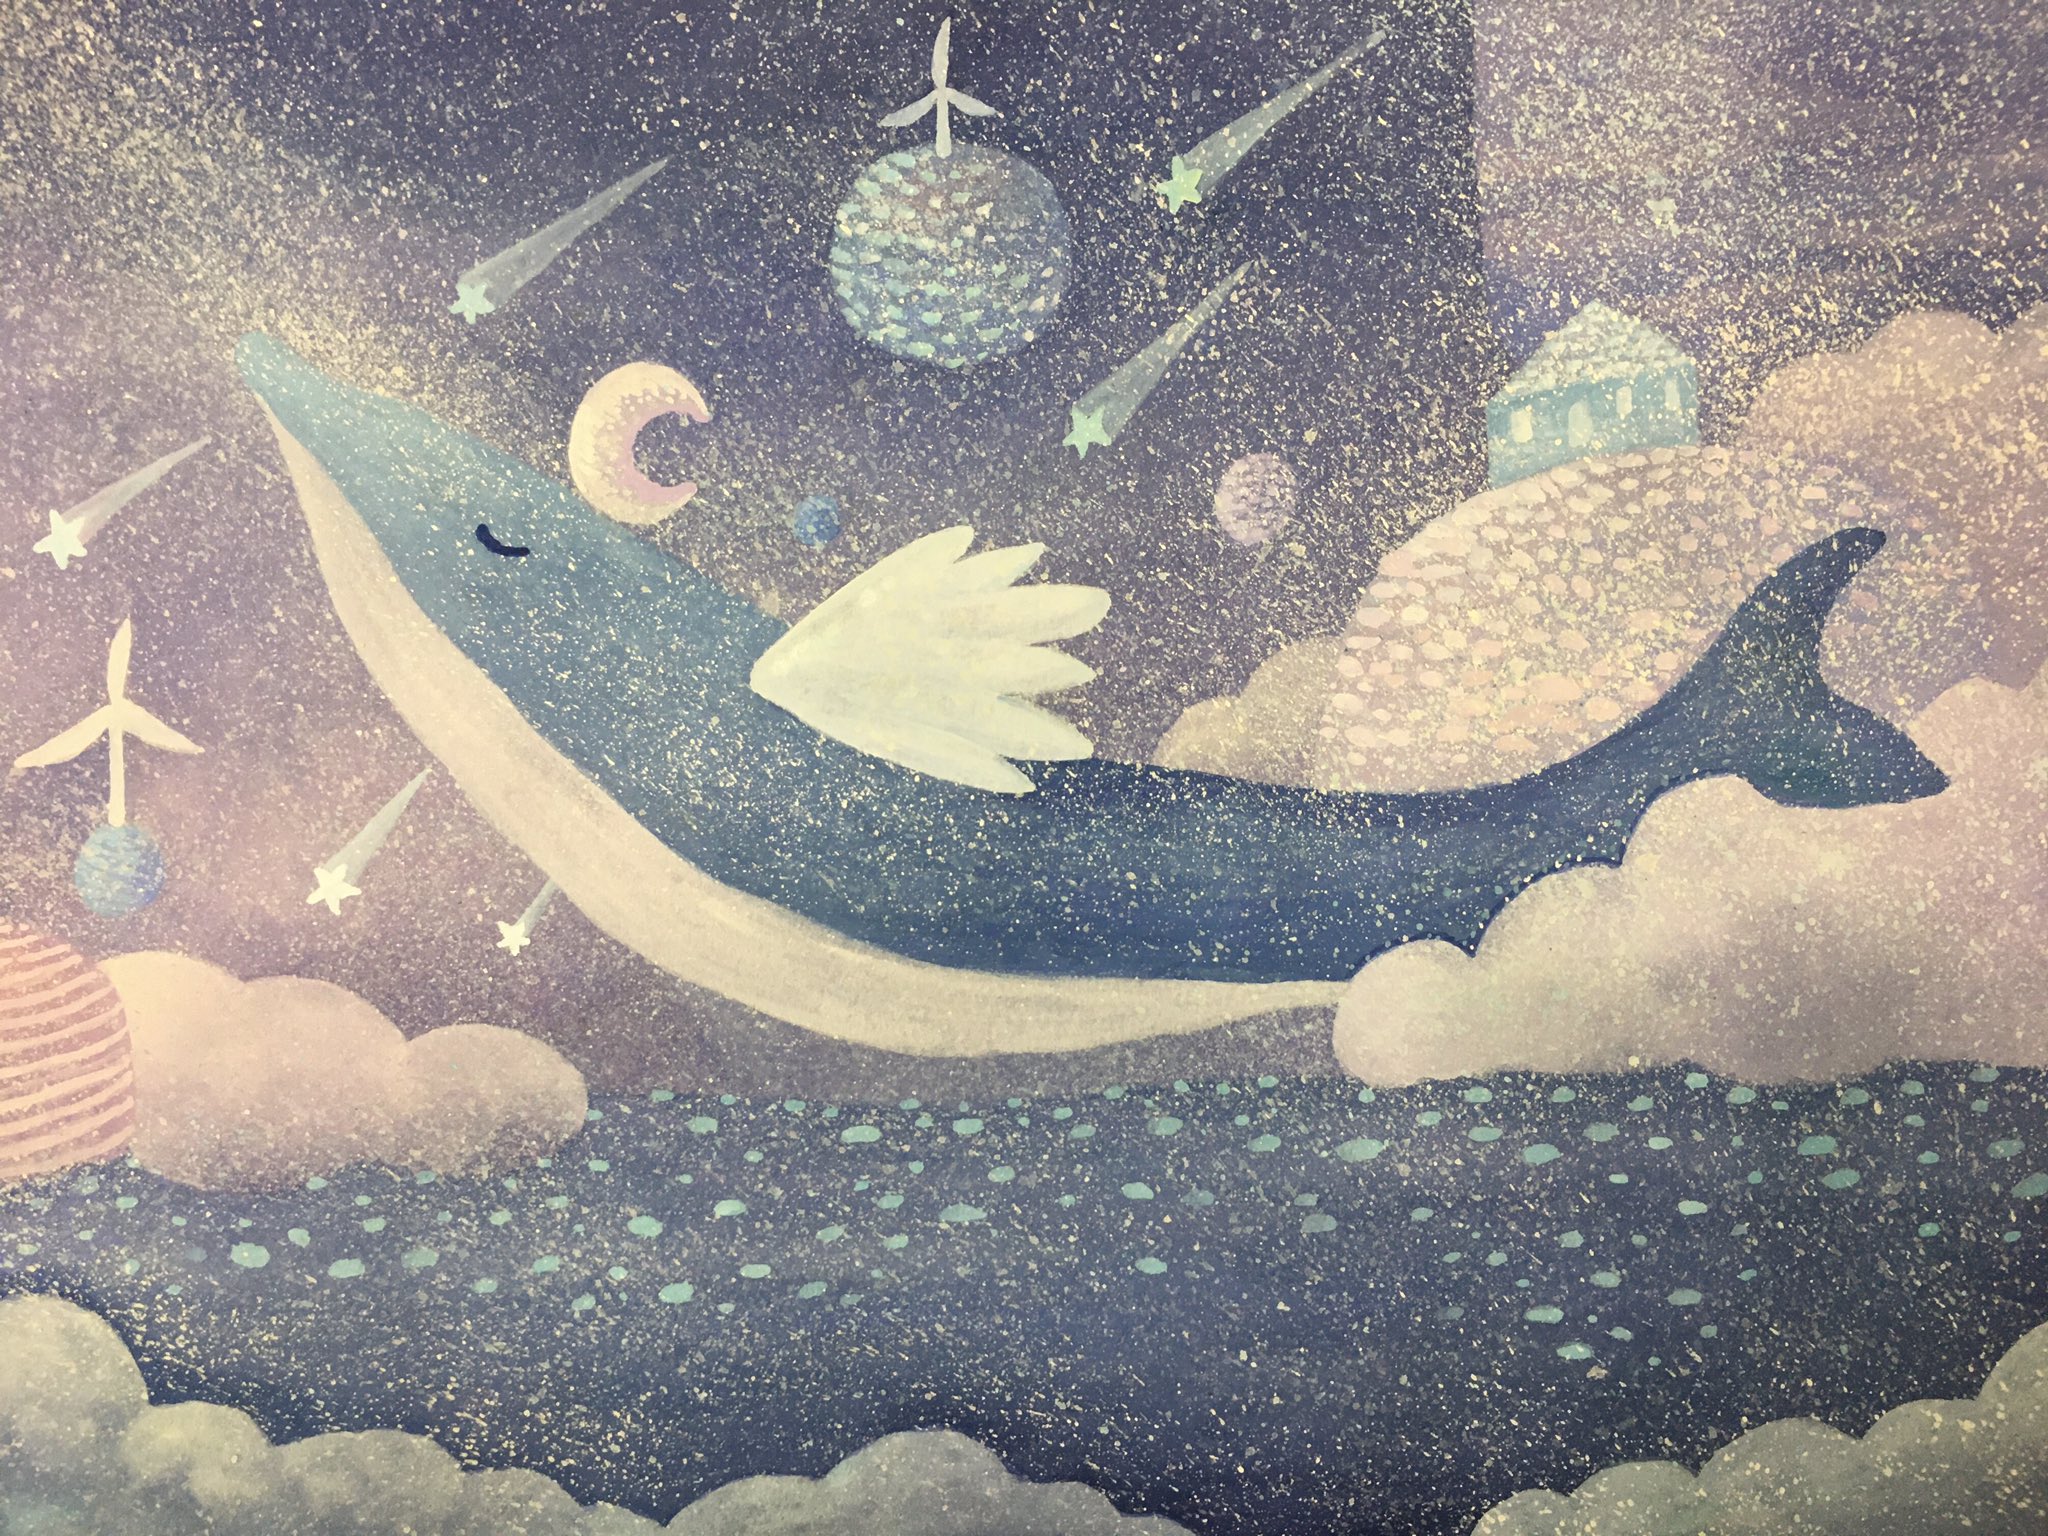 にゅもり Nyumori 流れ星が降る夢 不思議な世界の中に飛びます 海の歌を歌います Illustration Illustrationart 絵 絵描き 絵描きさんと繫がりたい 絵本 イラスト 絵画 T Co 4yuz6z2fhy Twitter